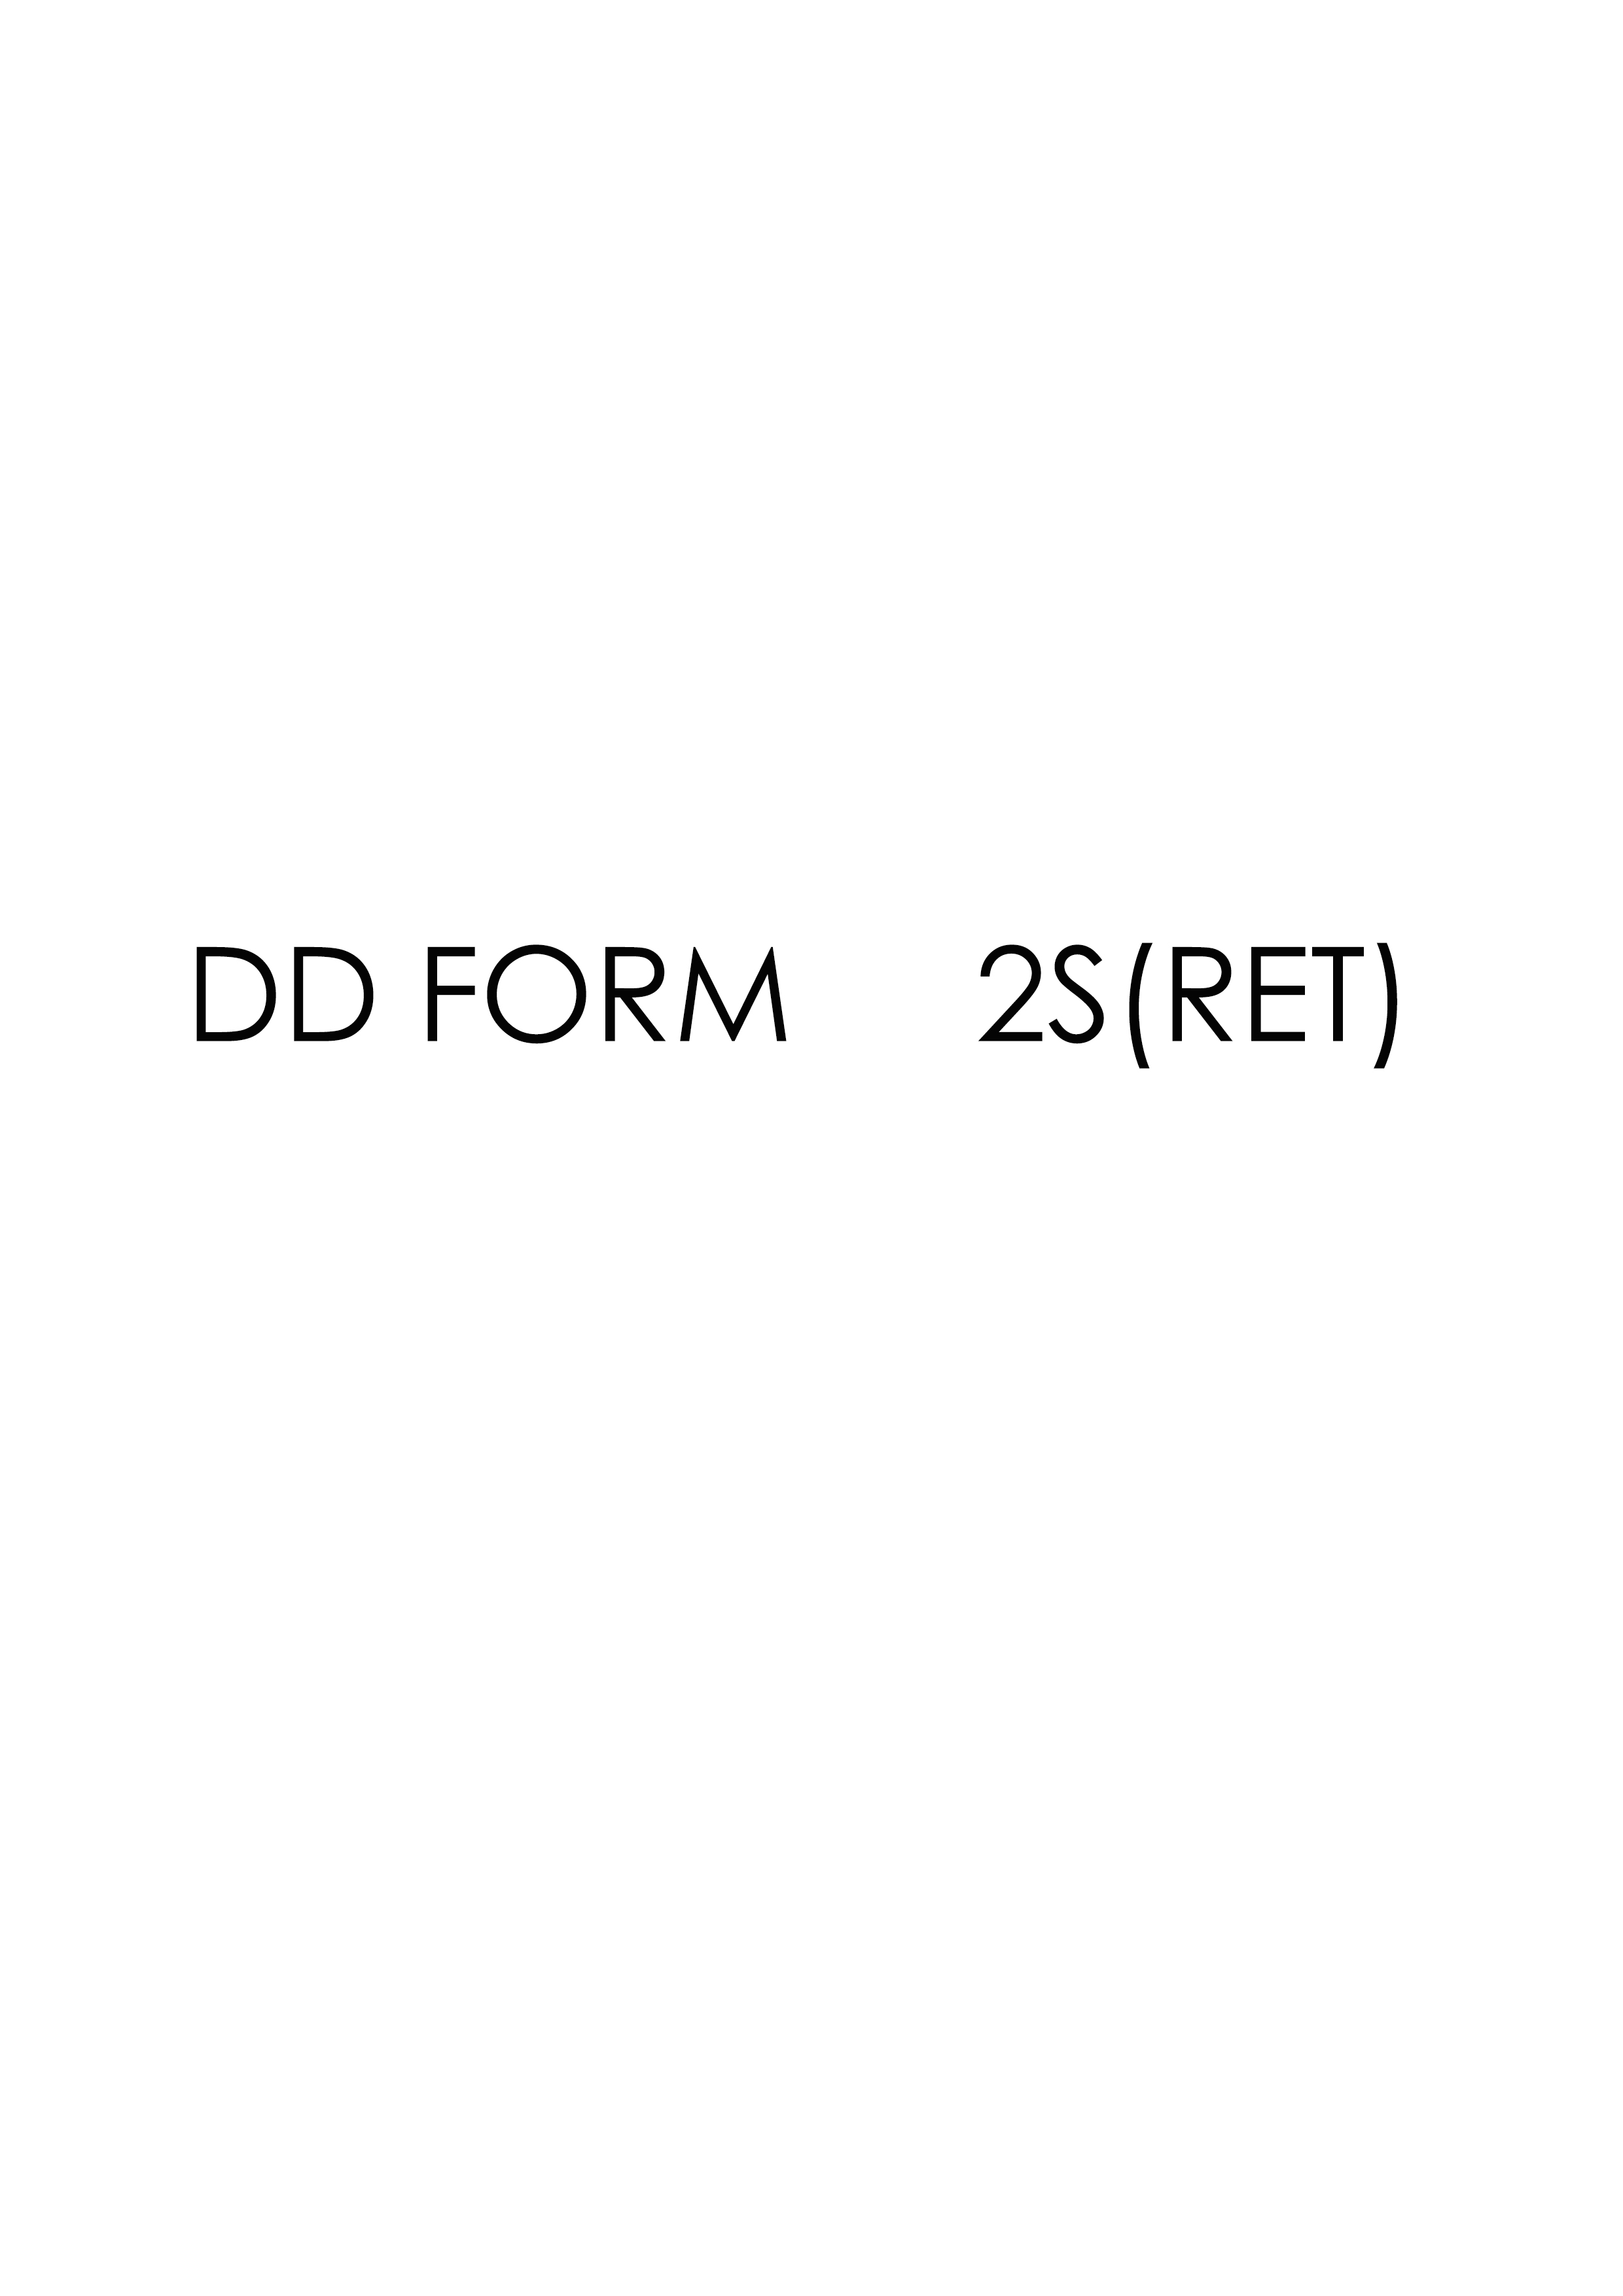 Download dd form 2S(RET)